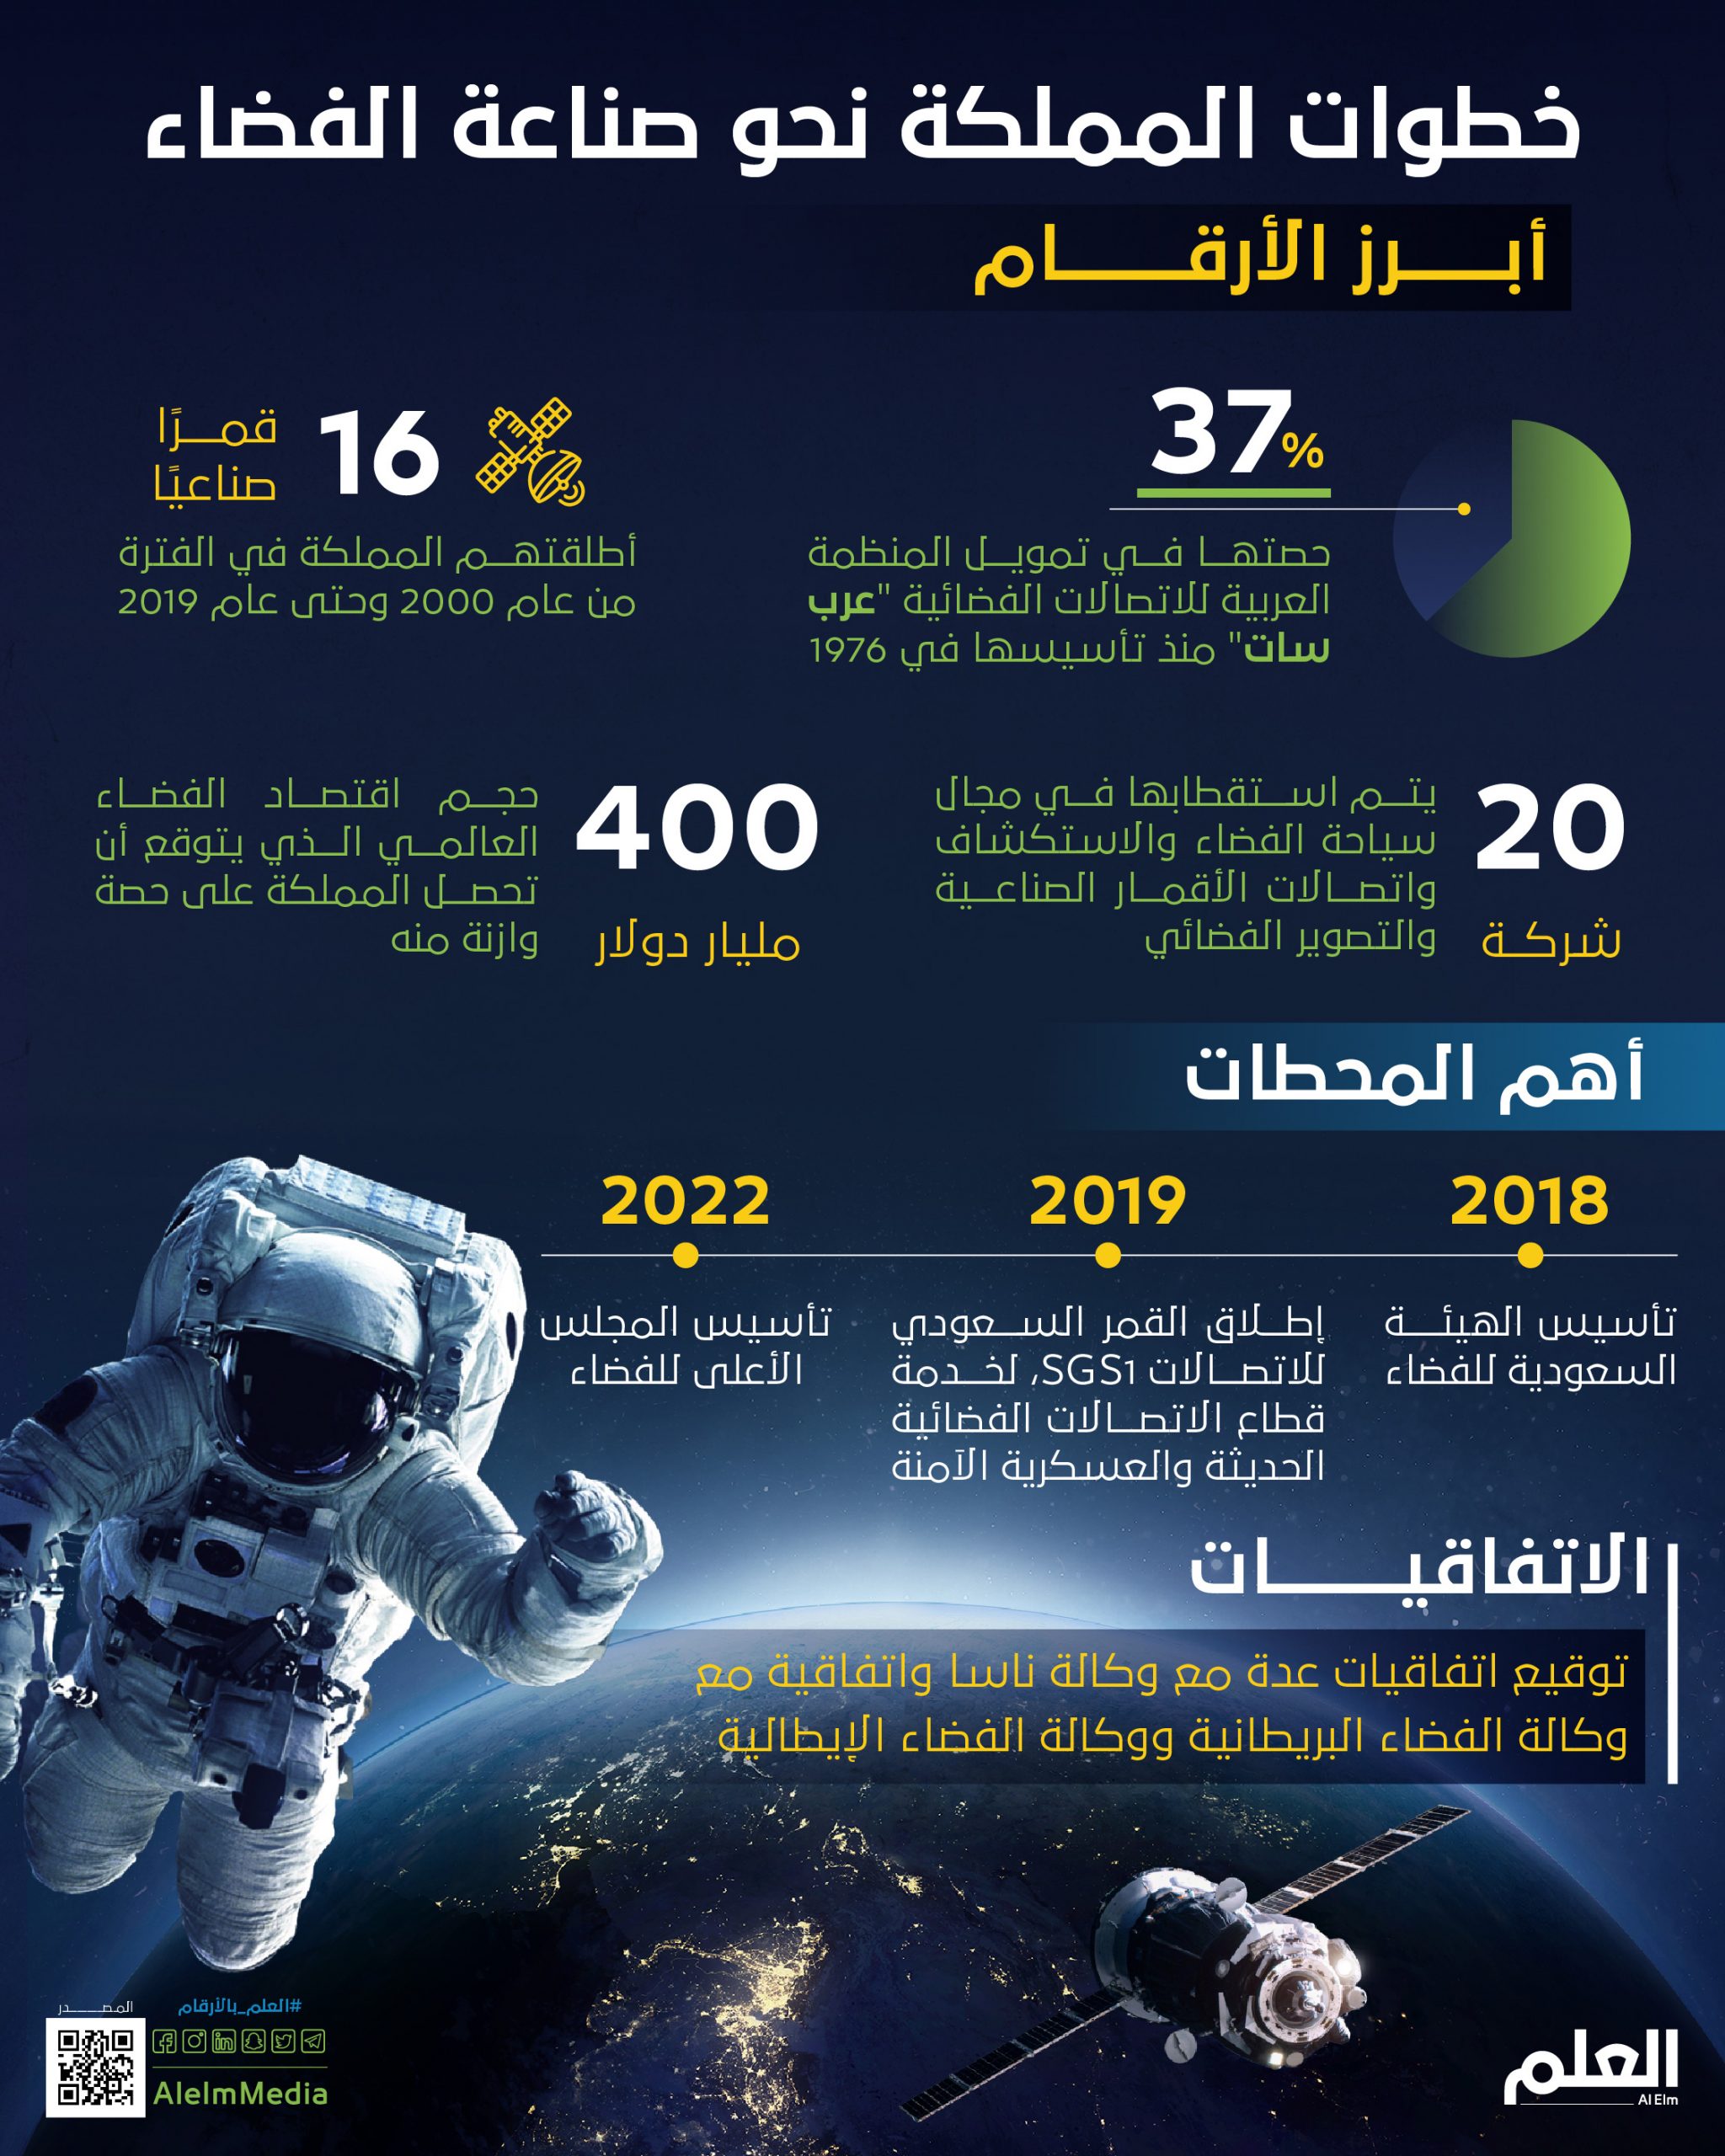 انجازات المملكة العربية السعودية فى مجال الفضاء - ما هو برنامج سات1؟